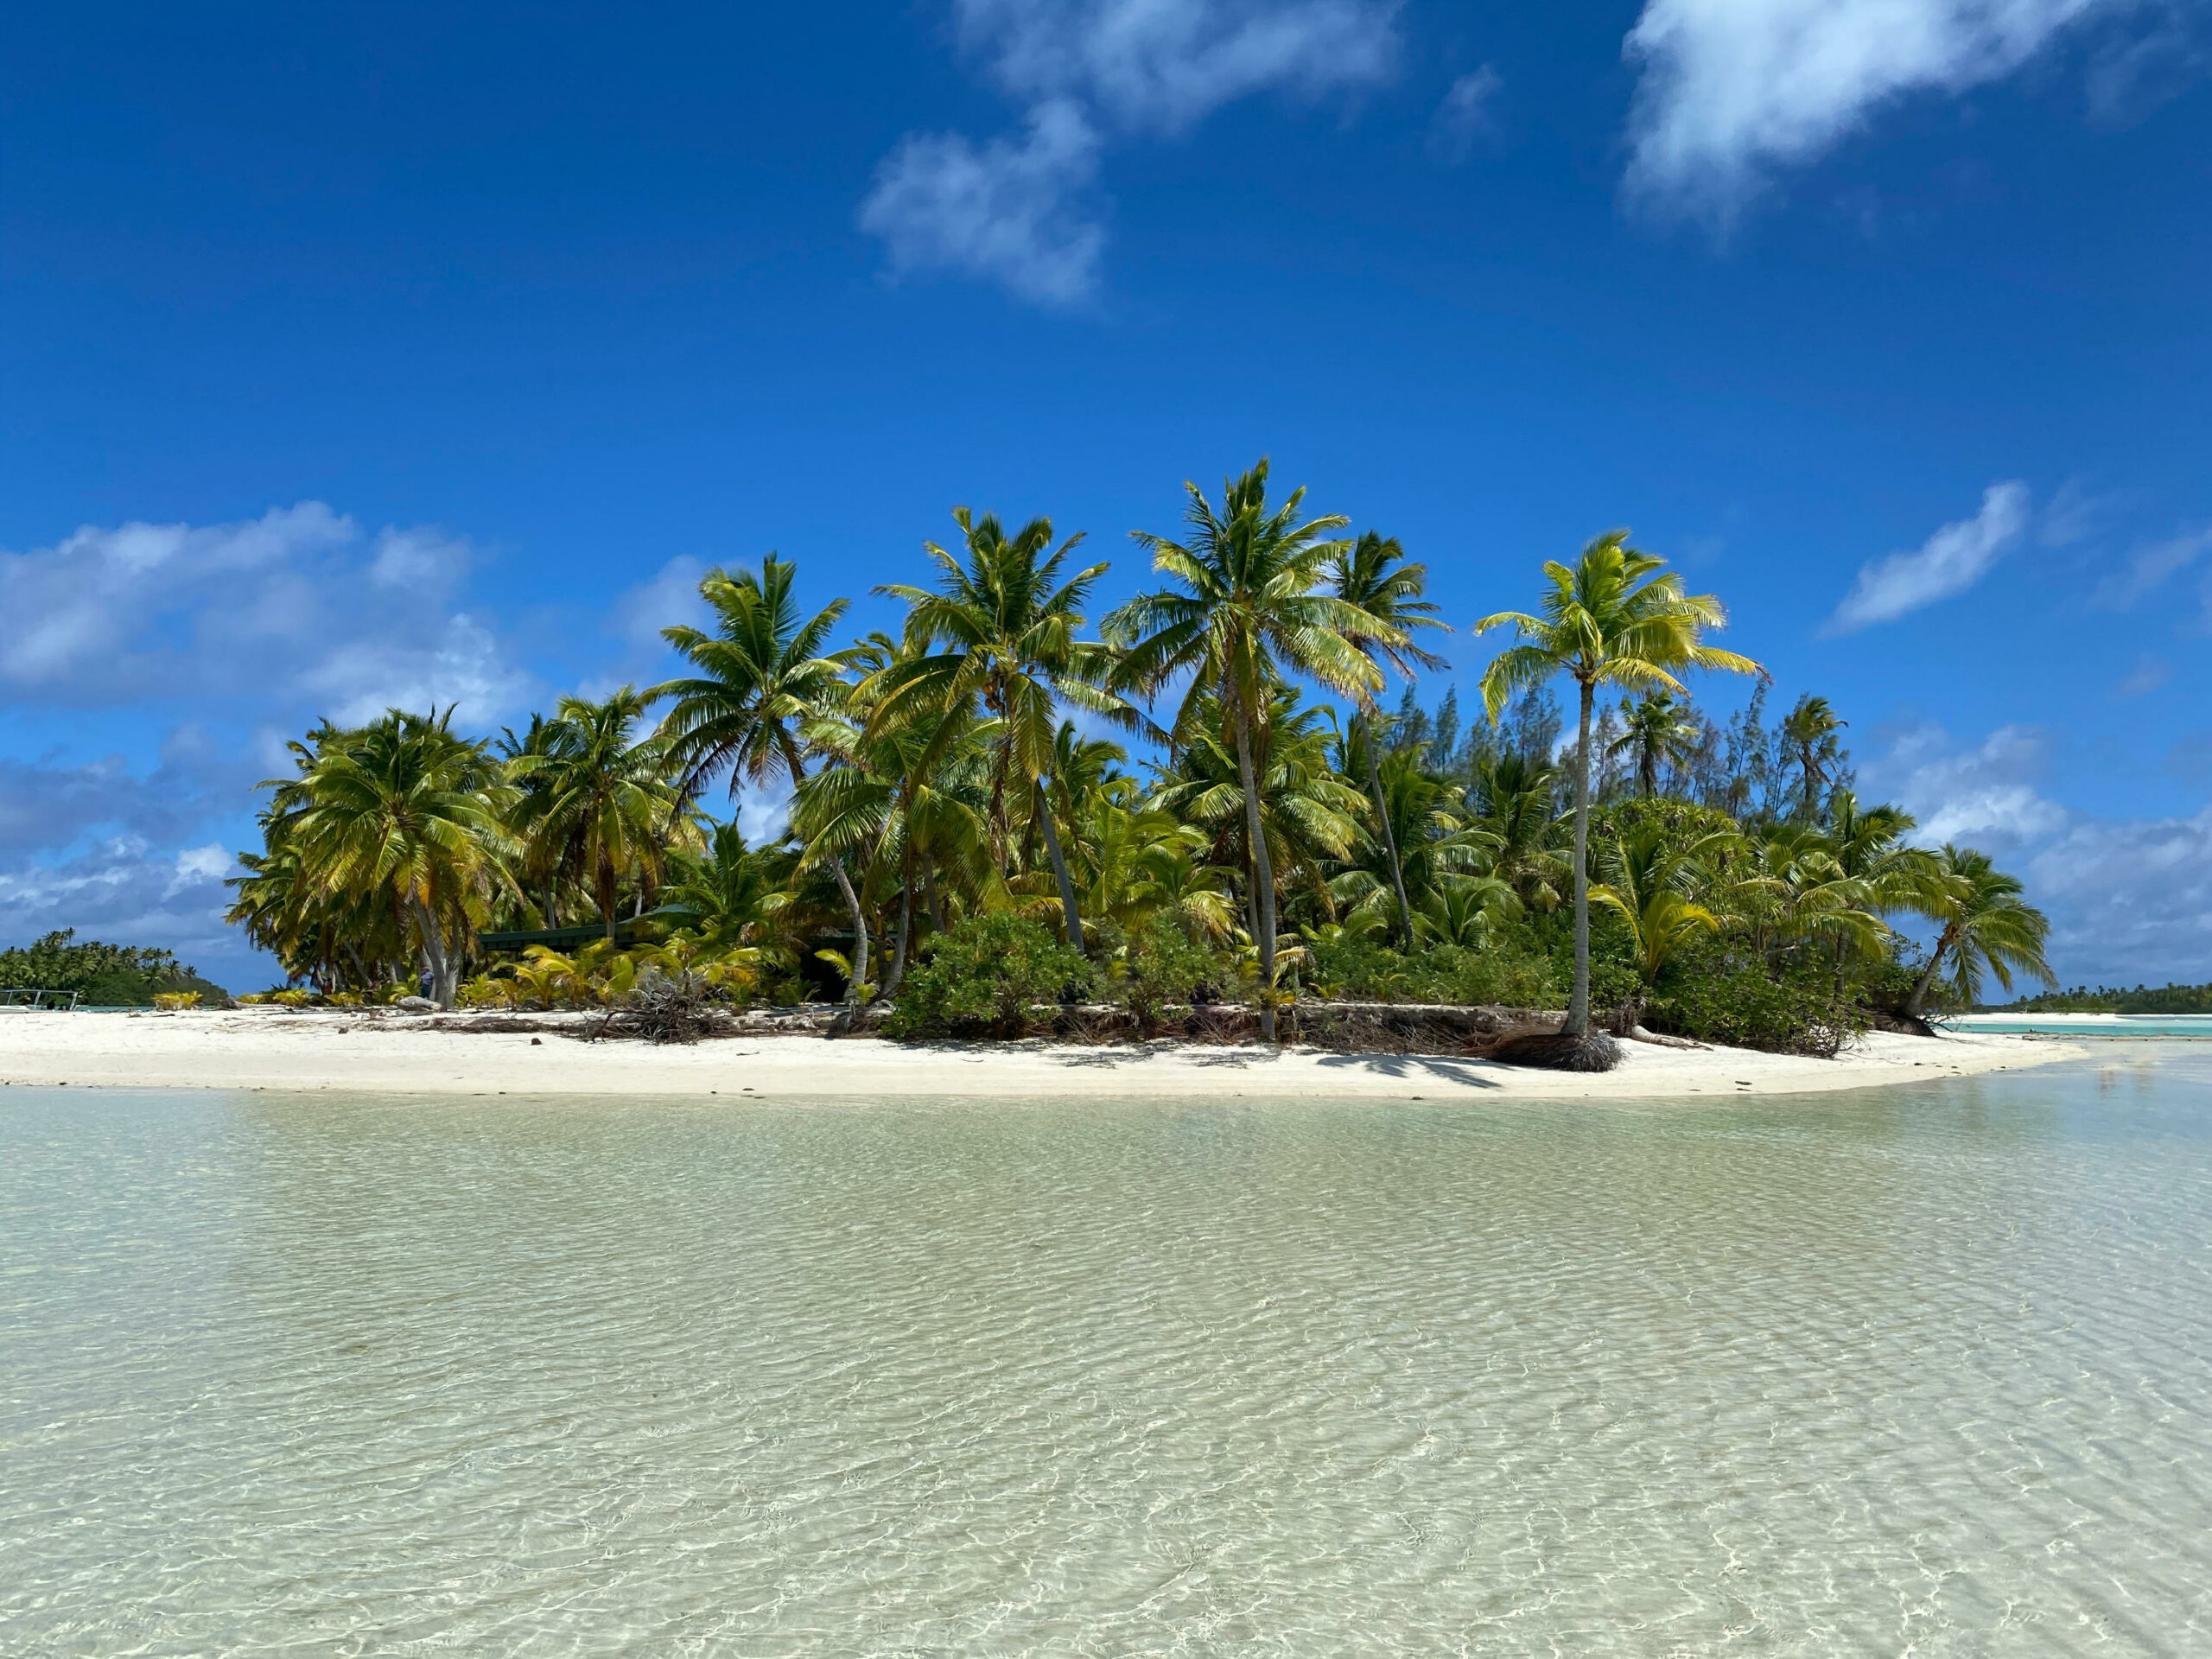 Das Bild zeigt die One-Foot Island bei Aitutaki. Im Vordergrund ist das flache Meer zu sehen, im Fokus des Bildes ist die Insel mit dem Strand und einem kleinen Palmenwald.